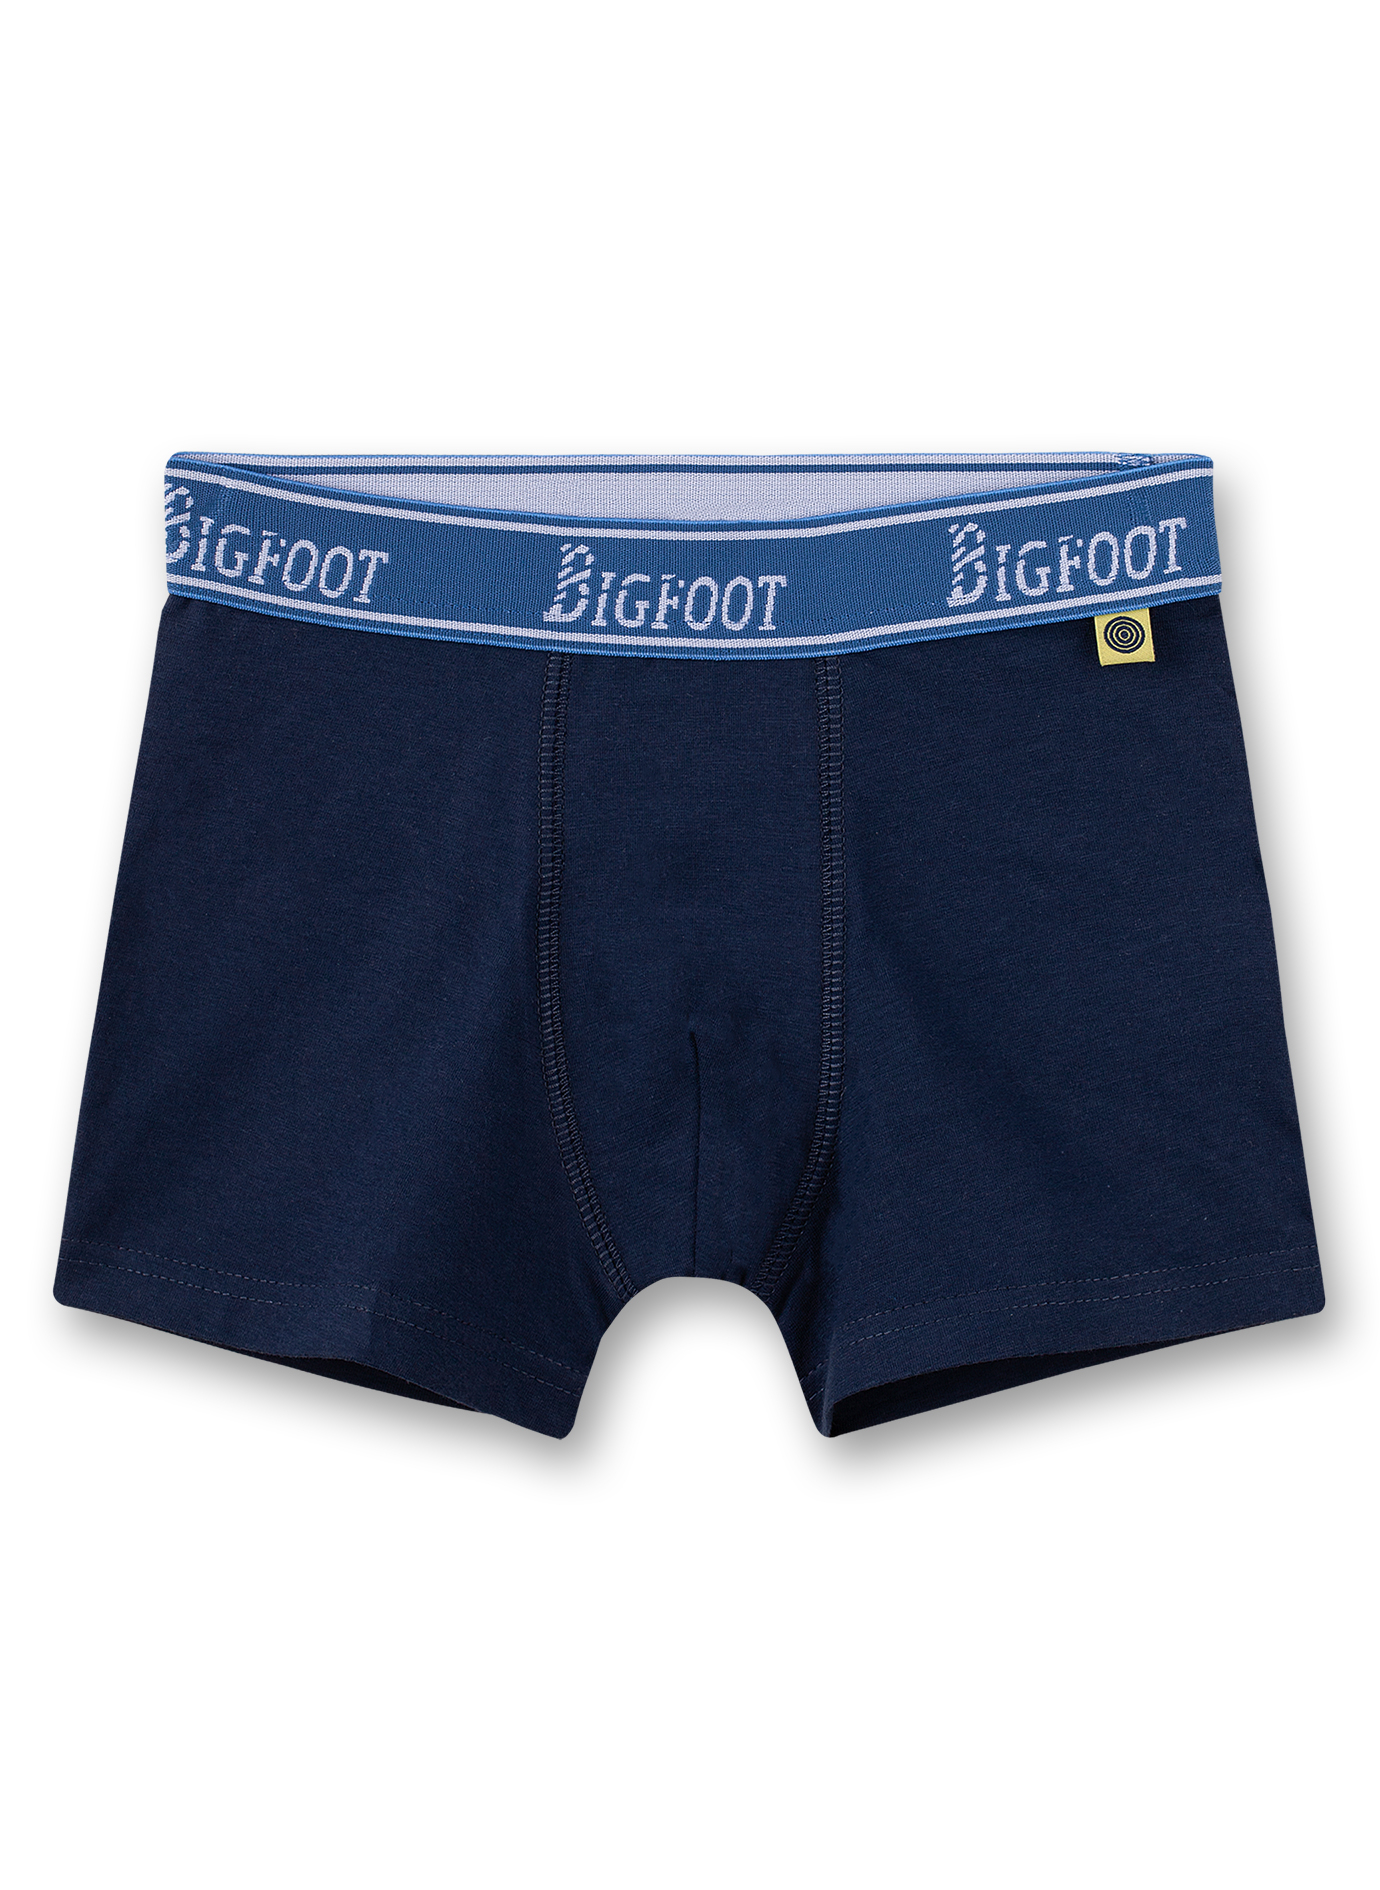 Jungen-Shorts (Doppelpack) Blau und Dunkelblau Bigfoot